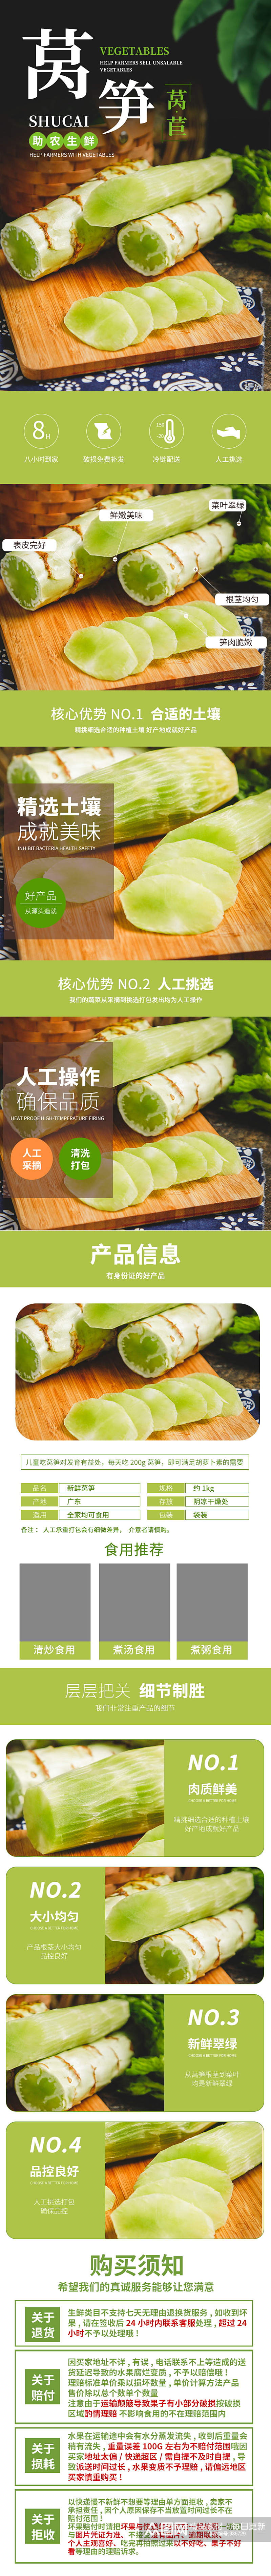 果蔬超市新鲜蔬菜莴笋莴苣笋青笋详情页素材